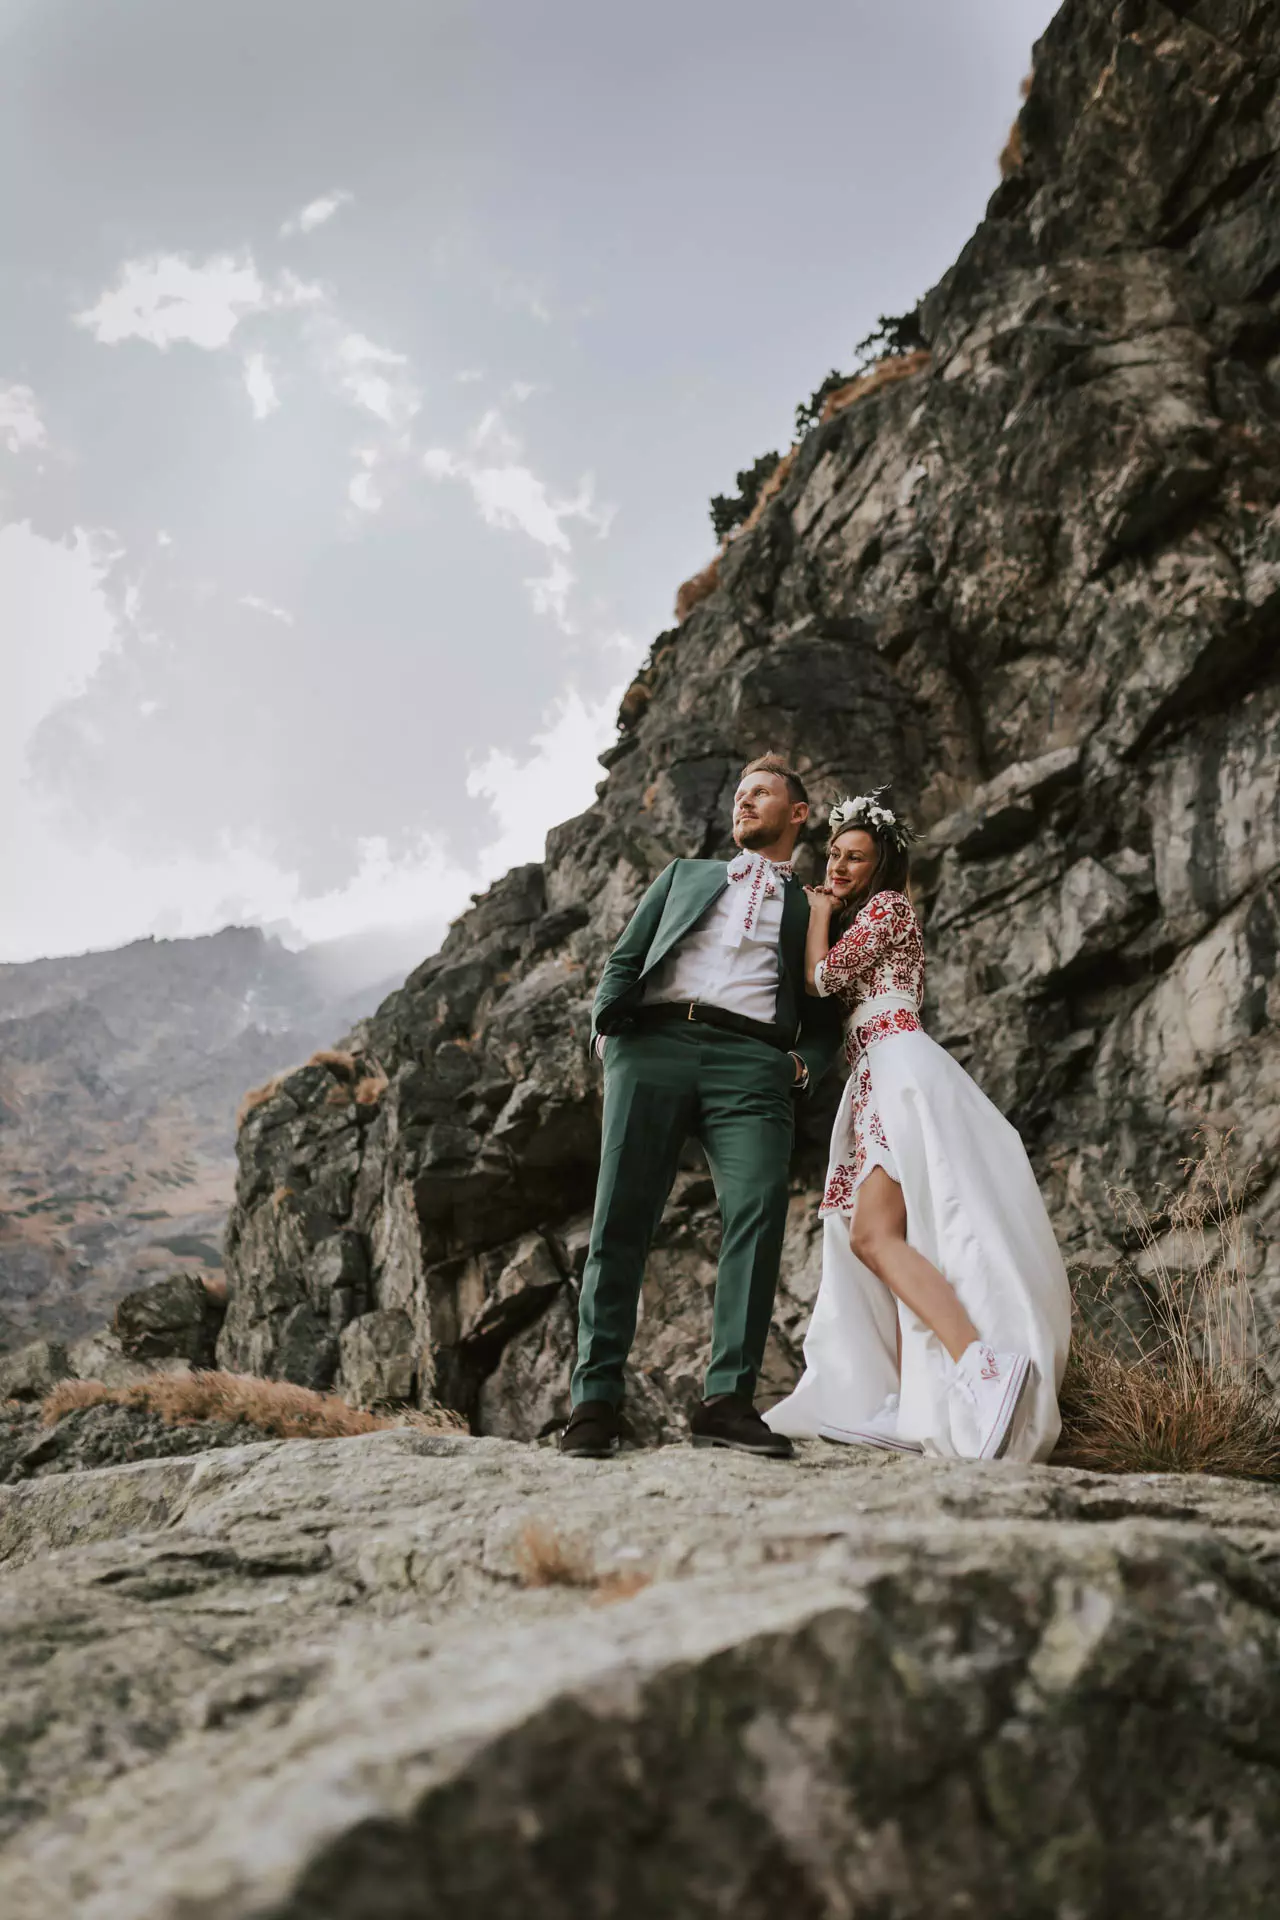 Svadobná fotka páru v horách na kameni